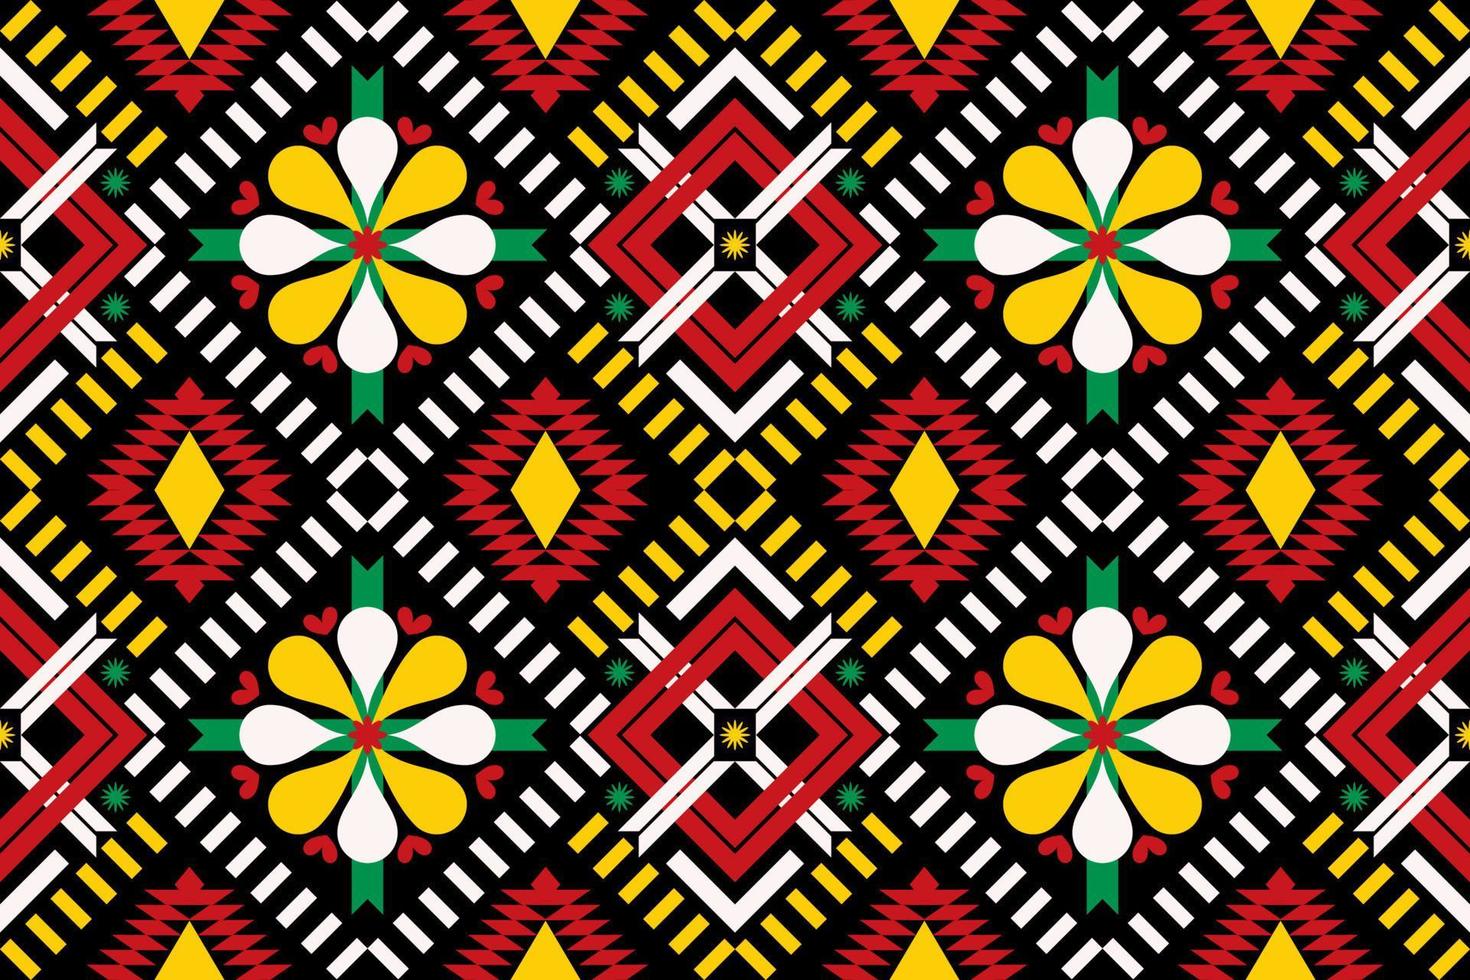 padrão étnico geométrico colorido sem costura projetado para plano de fundo, papel de parede, roupas tradicionais, tapete, cortina e decoração de casa. vetor